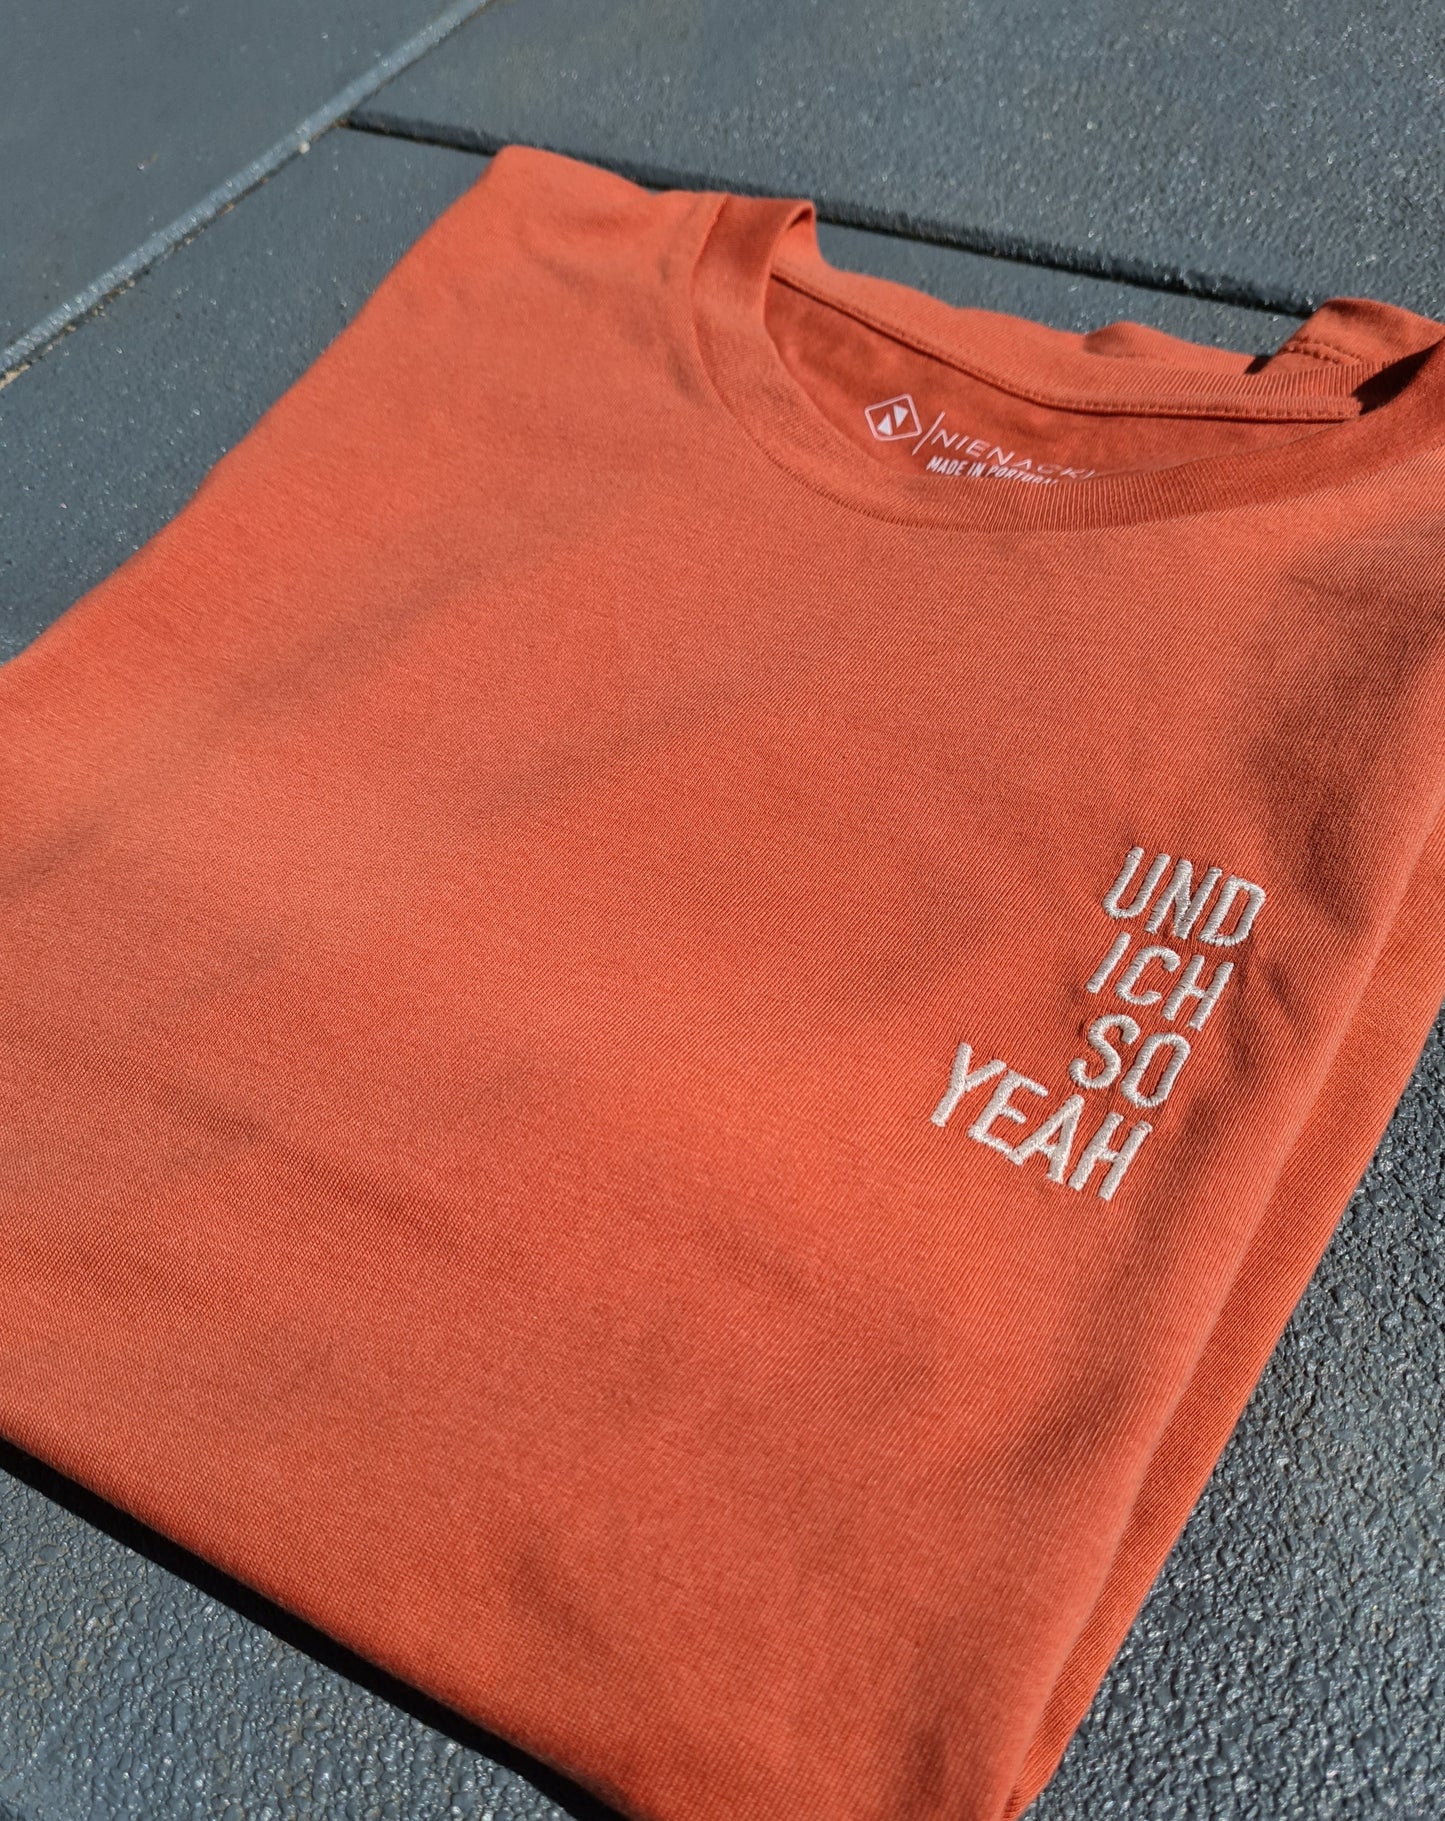 "Und ich so Yeah" Unisex-Shirt